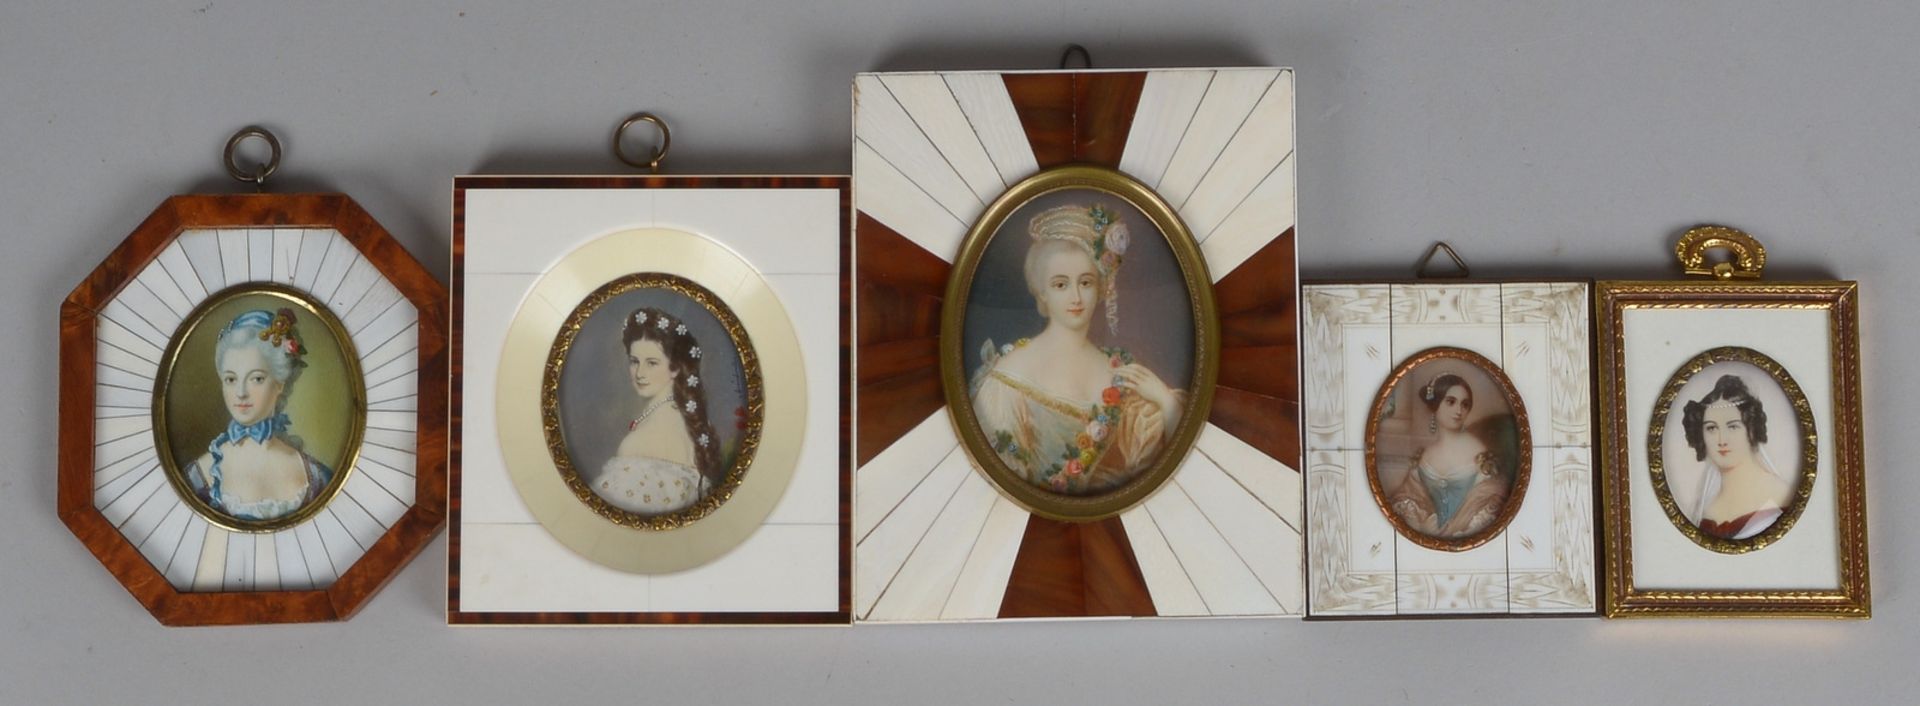 5 Miniaturen, versch. historische Damen-Portraits, Malerei auf Bein-Platte